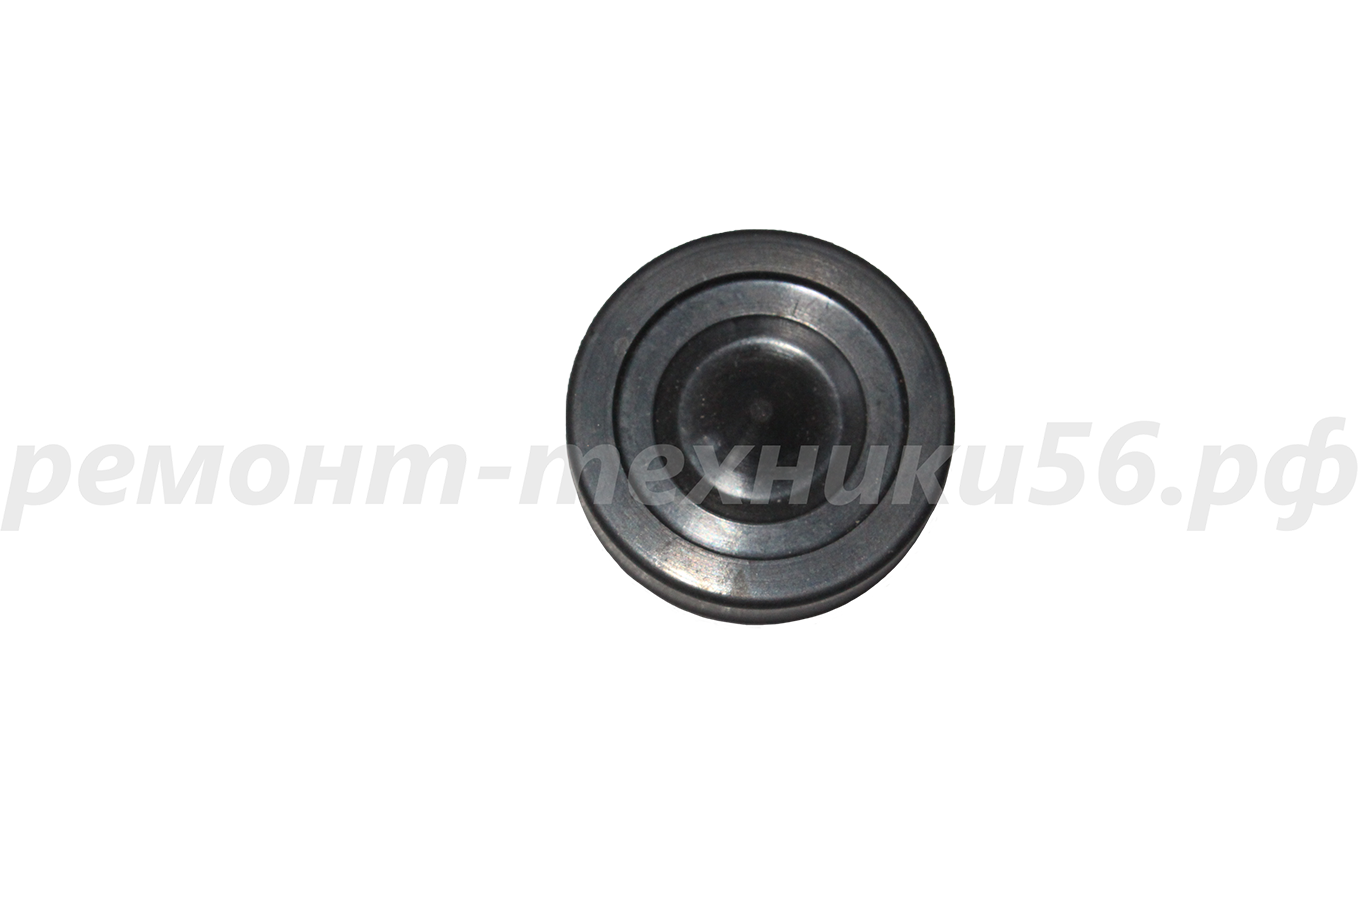 Мембрана электромагнитного клапана на АГВ 120, АОГВ выбор из каталога запчастей фото2